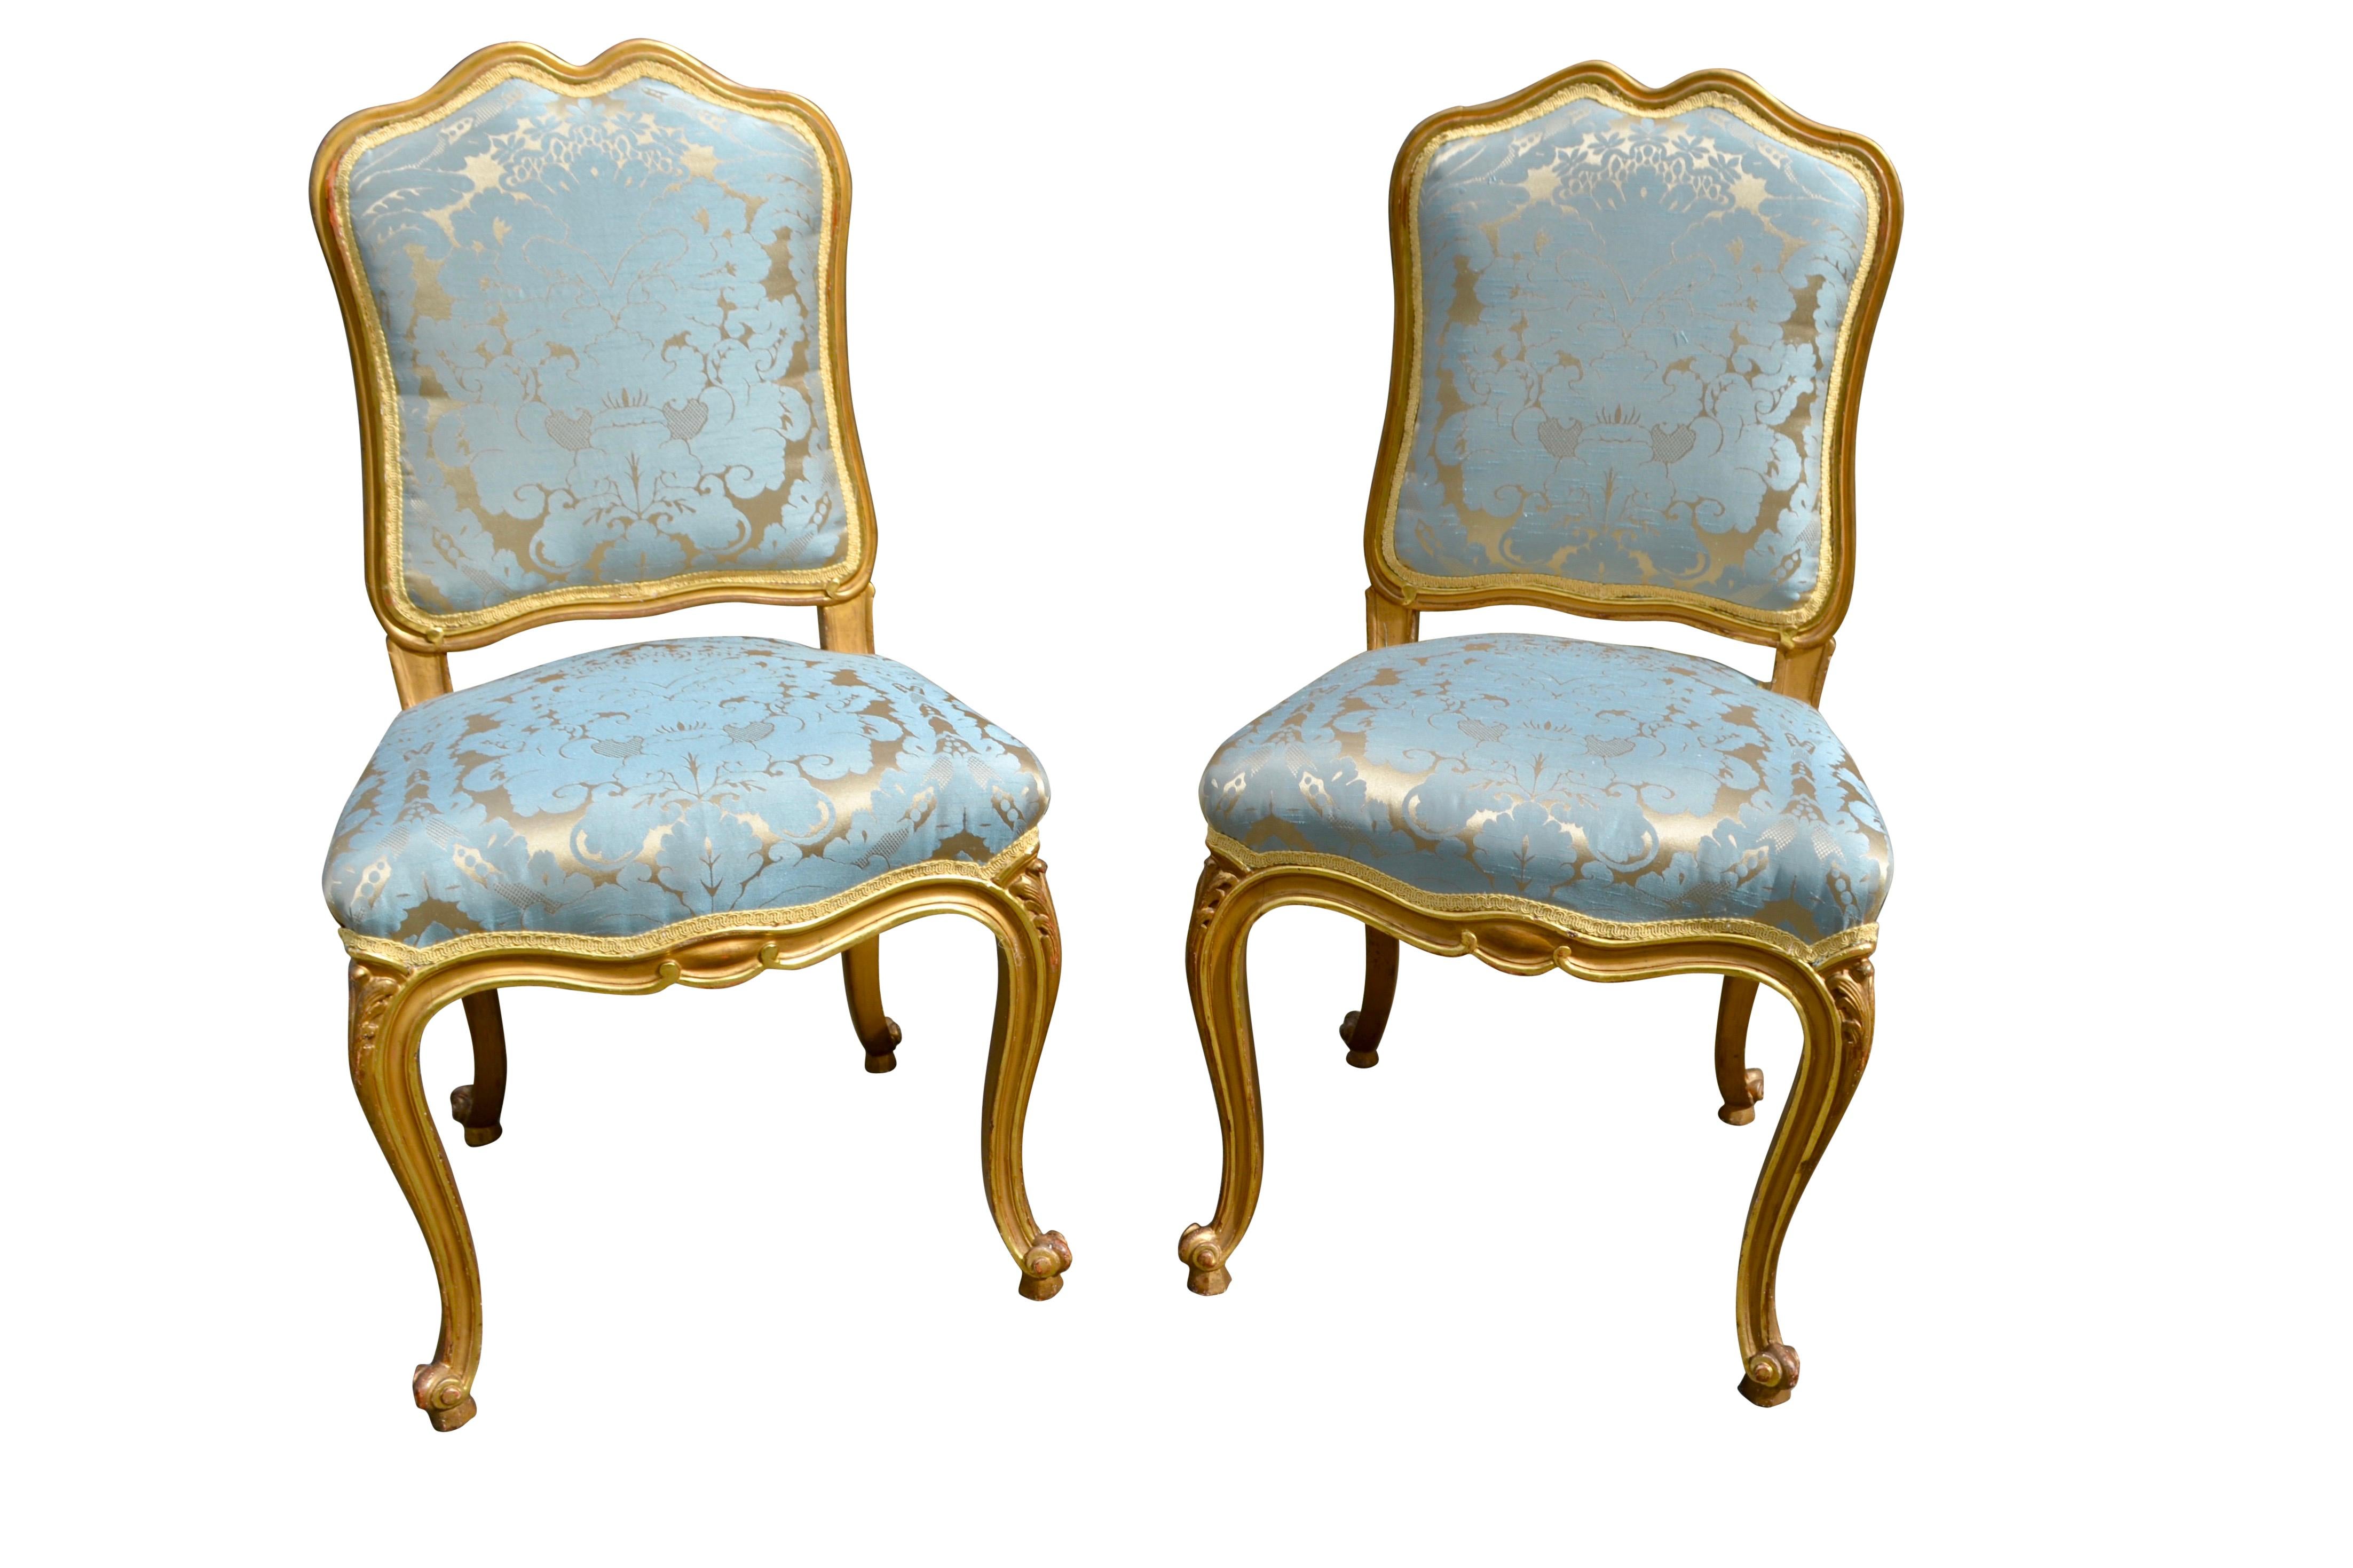 Ein dekoratives Paar Beistellstühle im Louis XV-Stil. Die gut geschnitzten Rahmen sind mit Blattgold veredelt und wurden vor kurzem mit türkisem/vergoldetem Damast gepolstert.